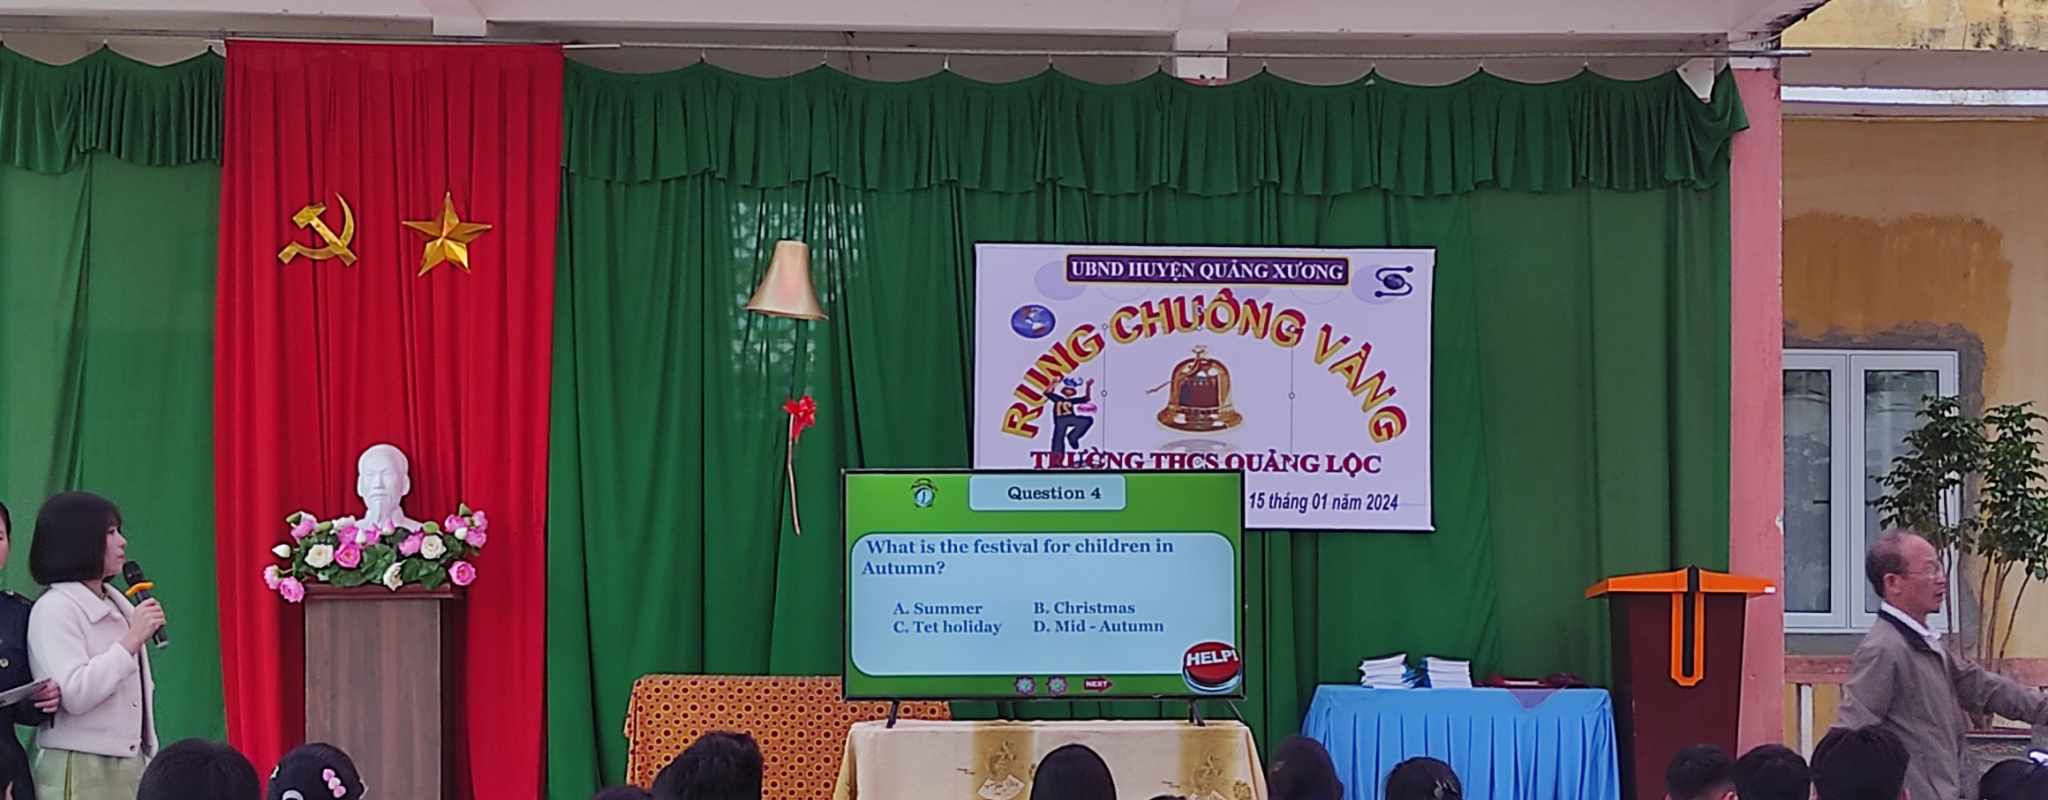 Trường THCS Quảng Lộc tổ chức trò chơi  “Rung chuông vàng” môn tiếng Anh